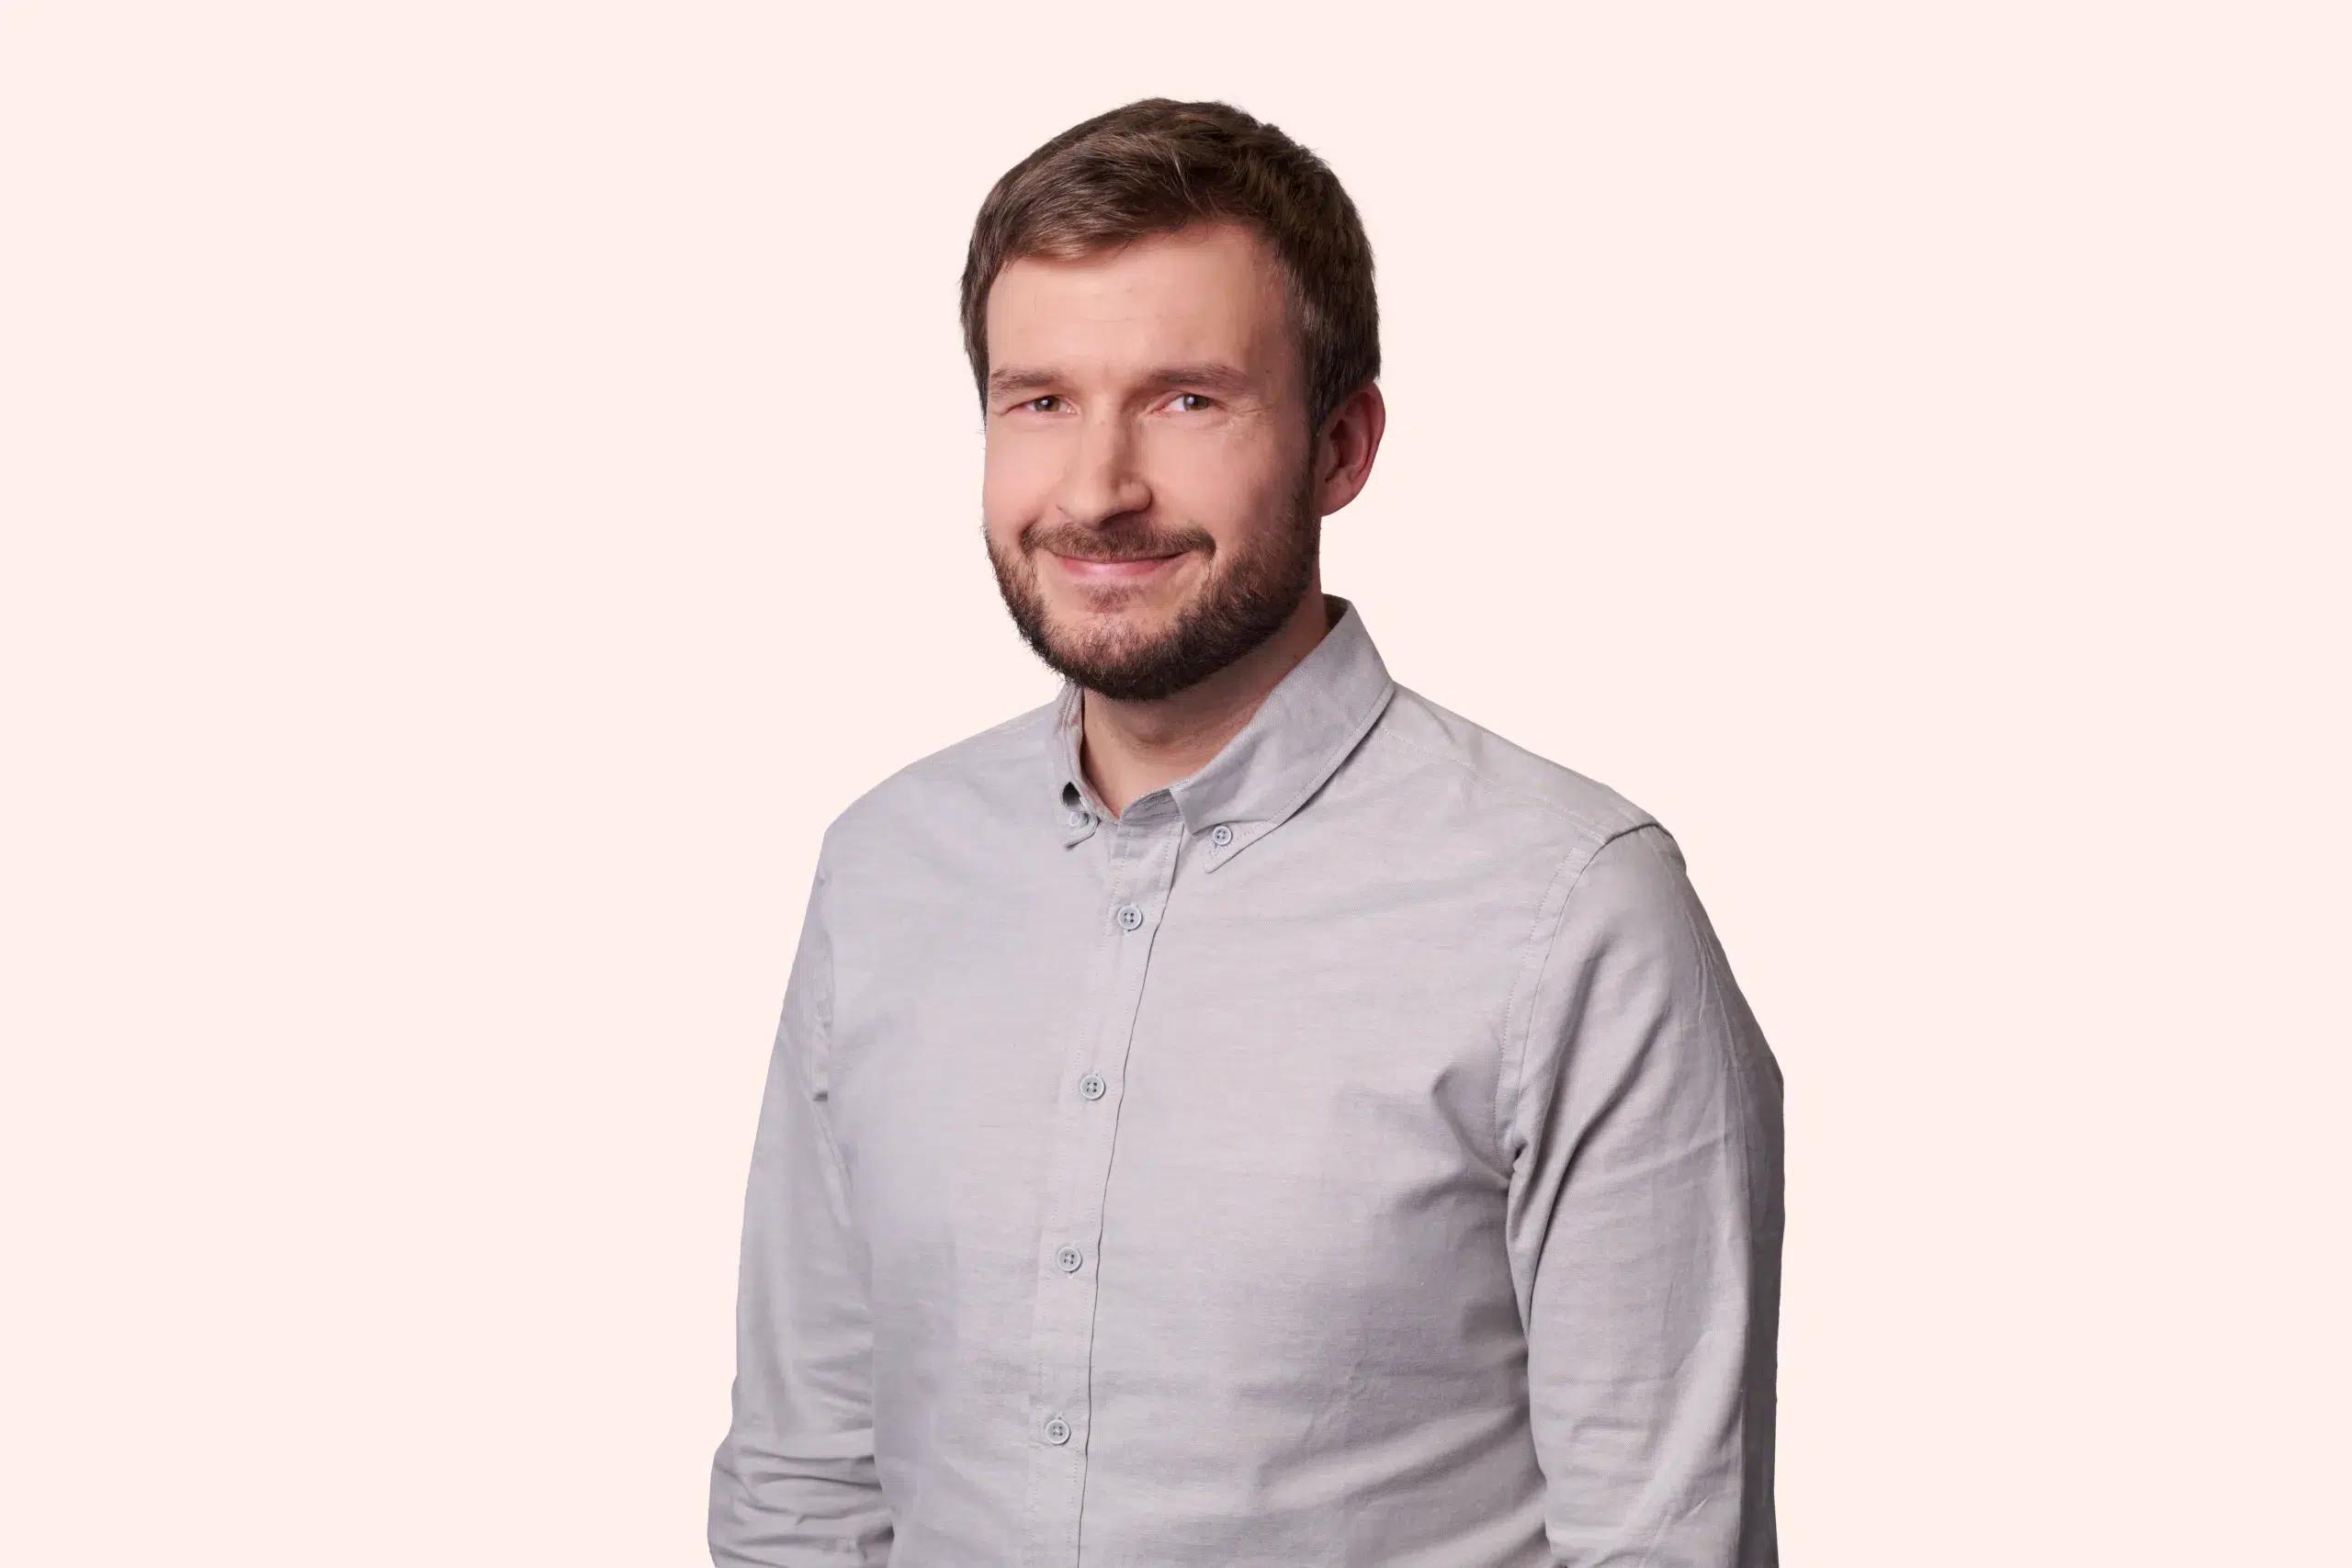 Aleksandr Gildi is a software developer at Bauwise.